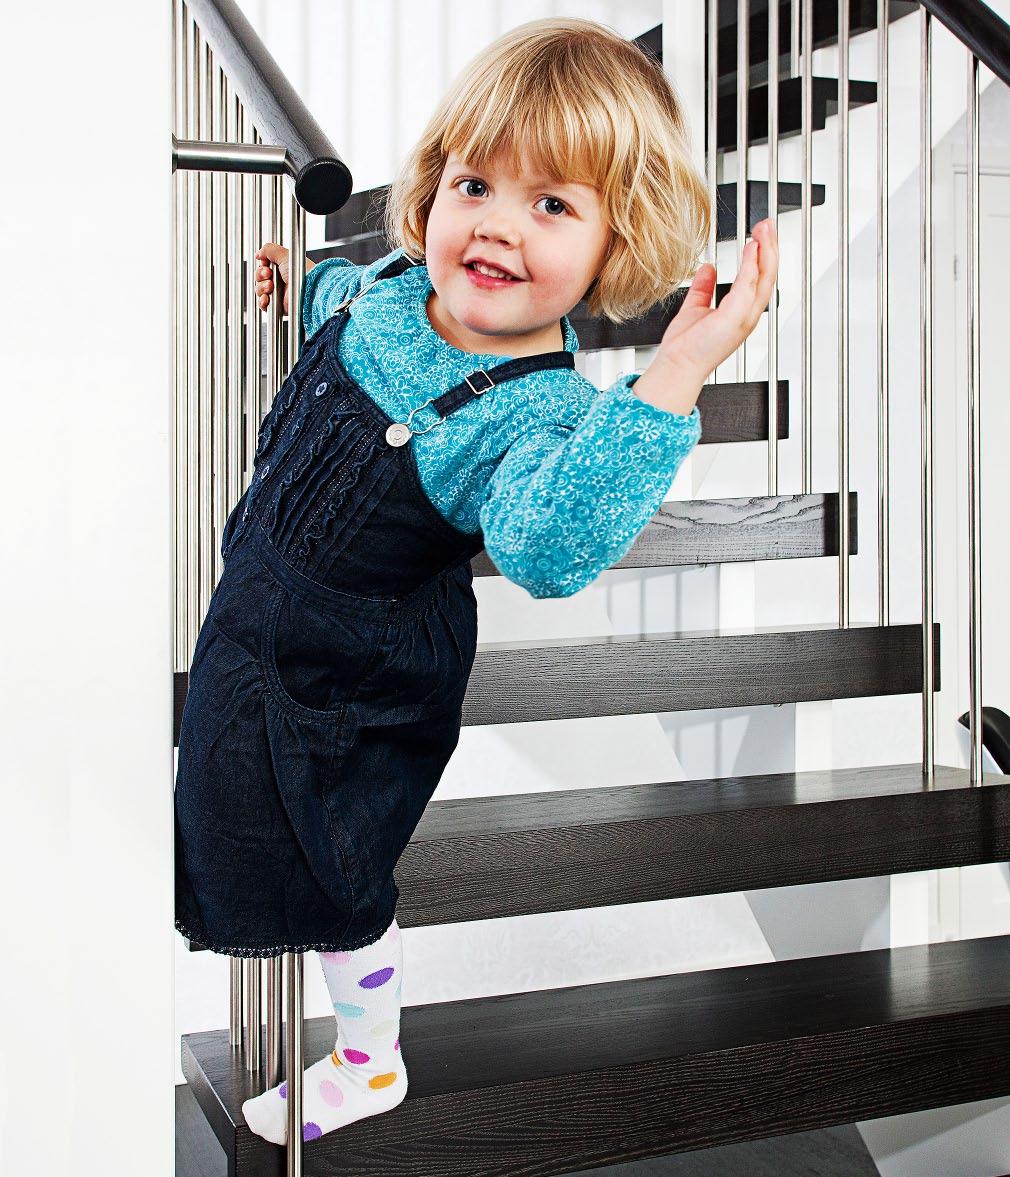 Även om det inte bor barn i huset just nu måste din trappa vara barnsäker.